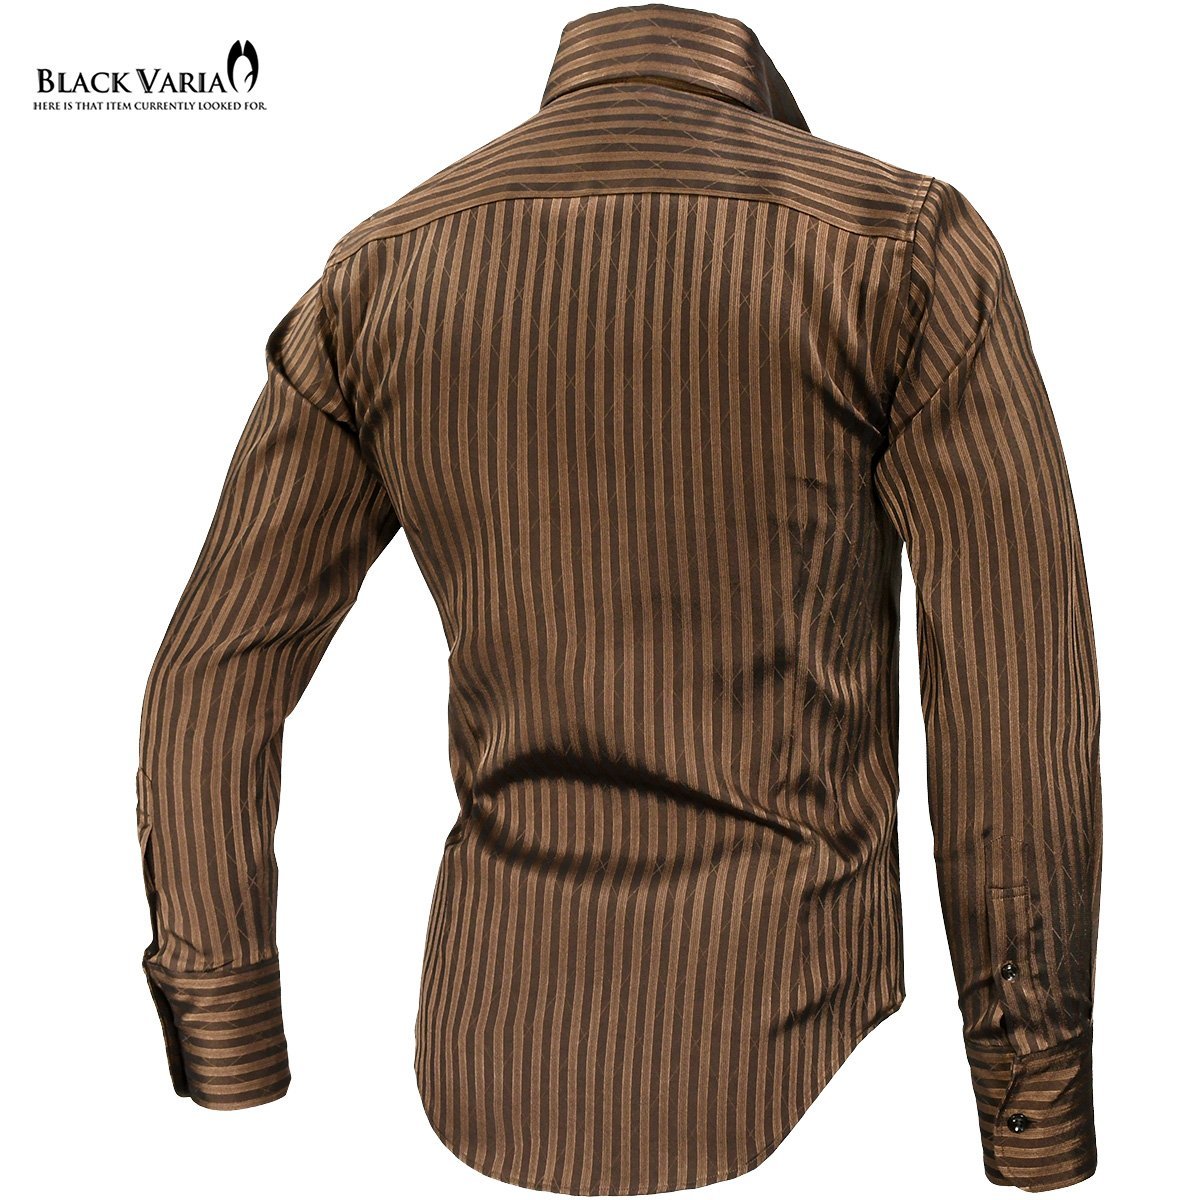 191852-brS BLACK VARIA ストライプ織柄 スキッパー スワロフスキーBD ドレスシャツ スリム メンズ(ブラックダイヤ釦 ブラウン茶) L_襟元ボタンはブラックダイヤです